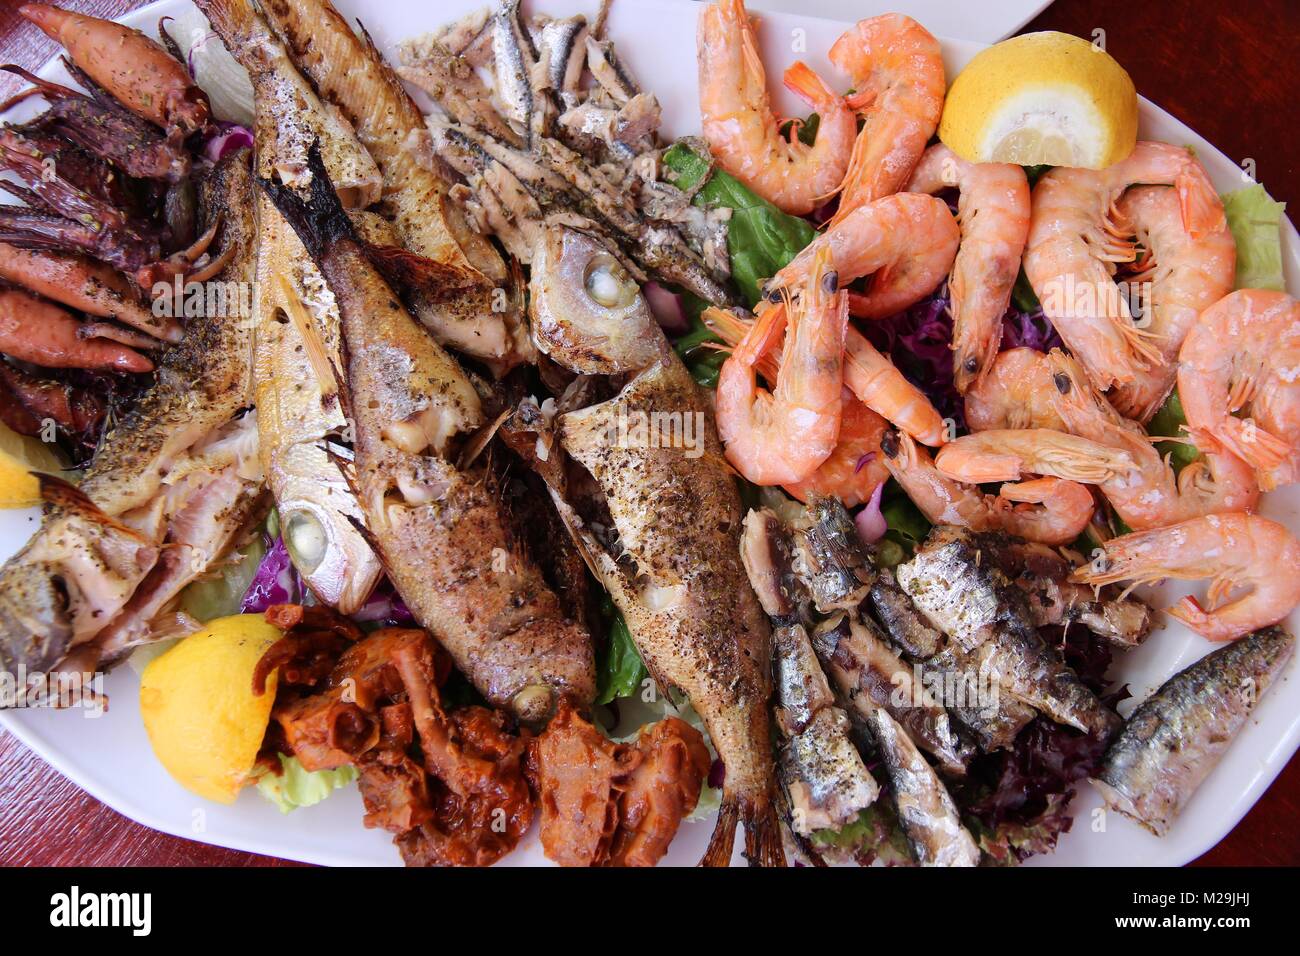 La cucina greca - tradizionale pesce alla griglia piastra con gamberetti, acciughe, sardine, calamari e altri pesci. Foto Stock